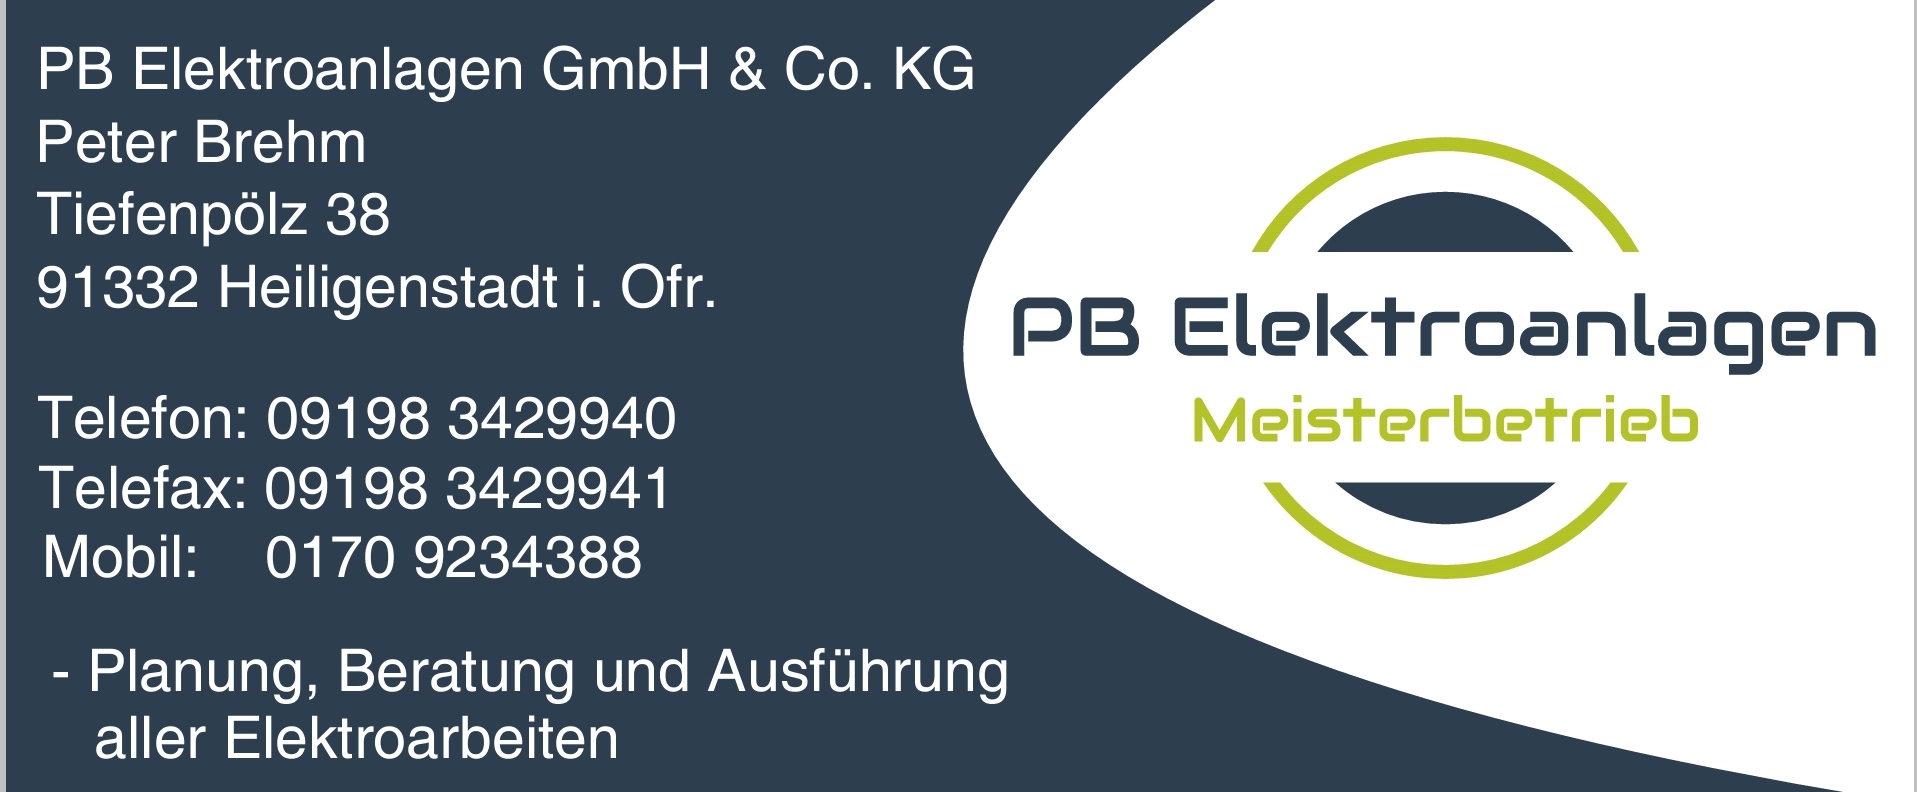 Bild 1 PB Elektroanlagen GmbH & Co. KG Peter Brehm in Heiligenstadt i OFr